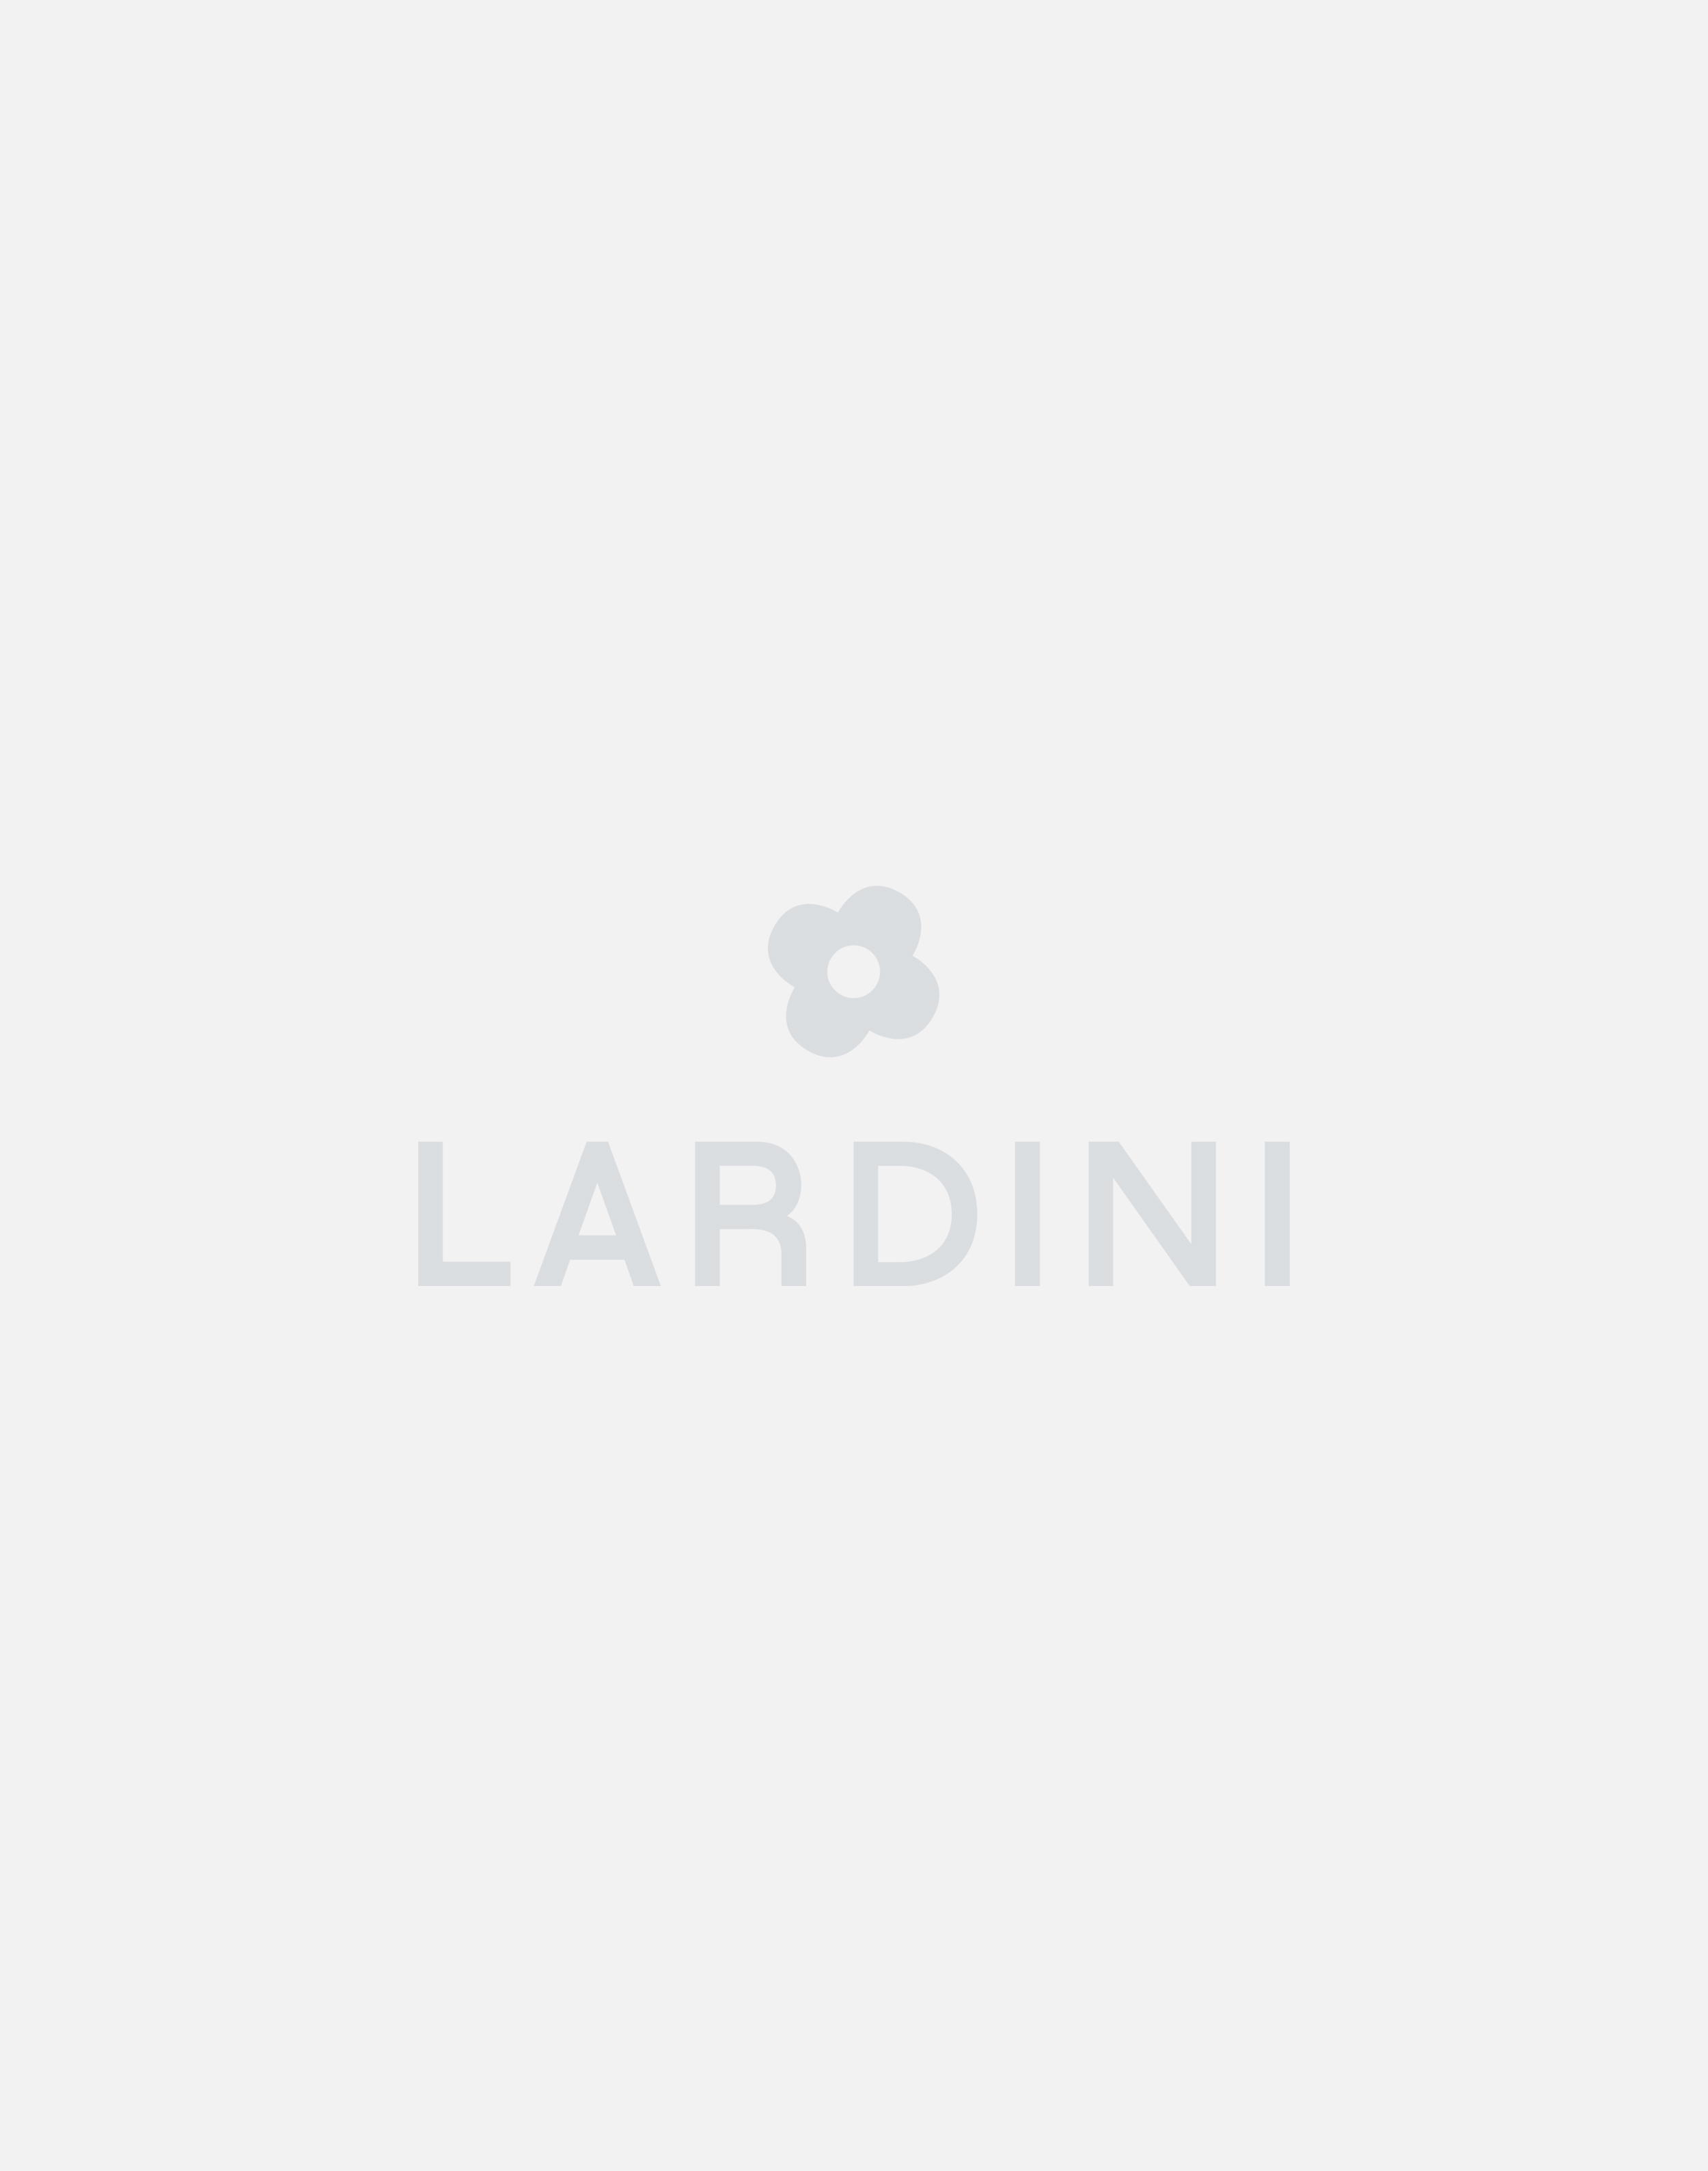 Leather slip-on sneaker - Lardini by Yosuke Aizawa 1